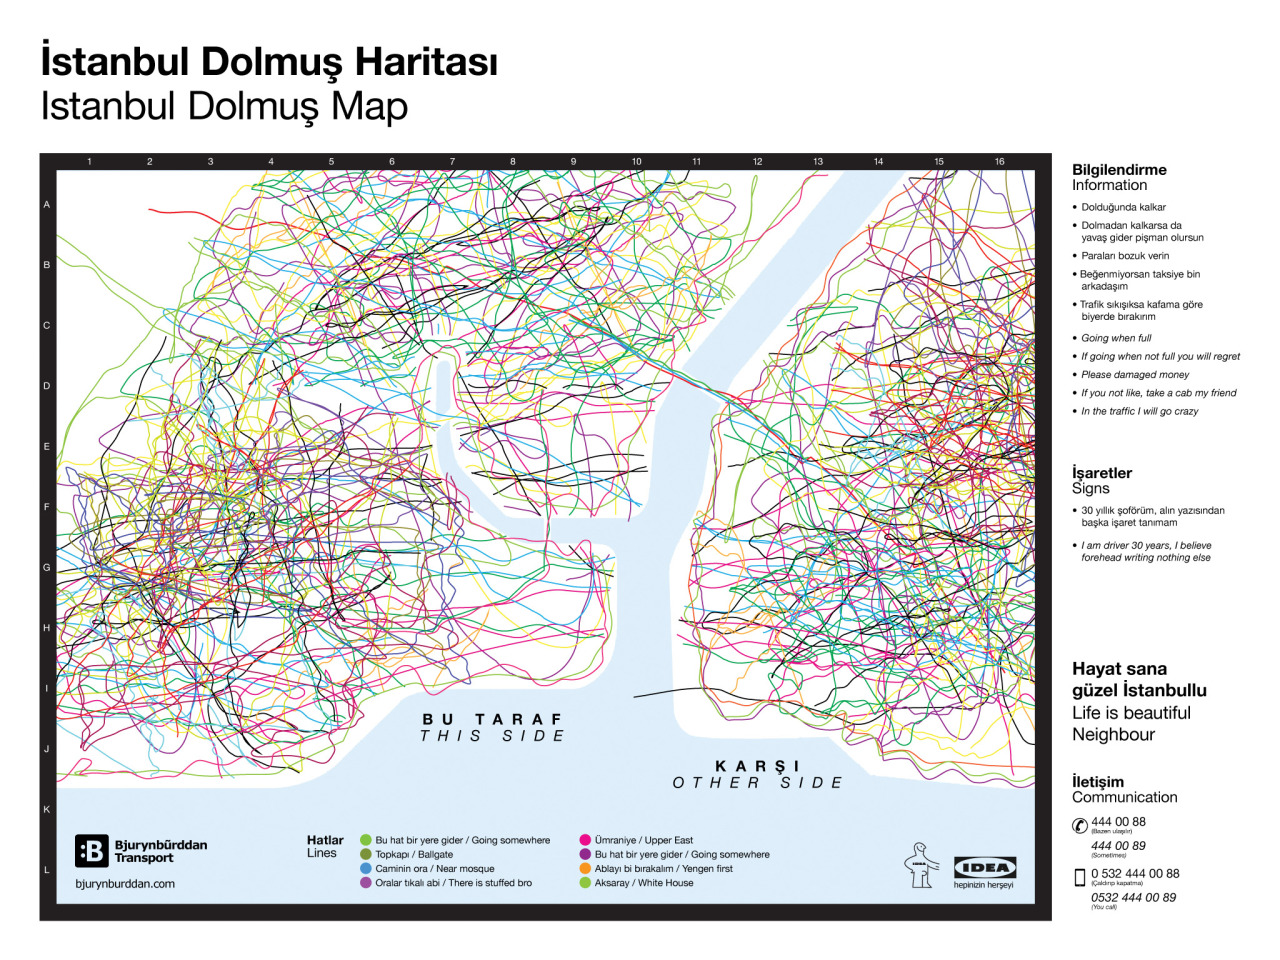 Dolmuş-térkép a tumblr szerint